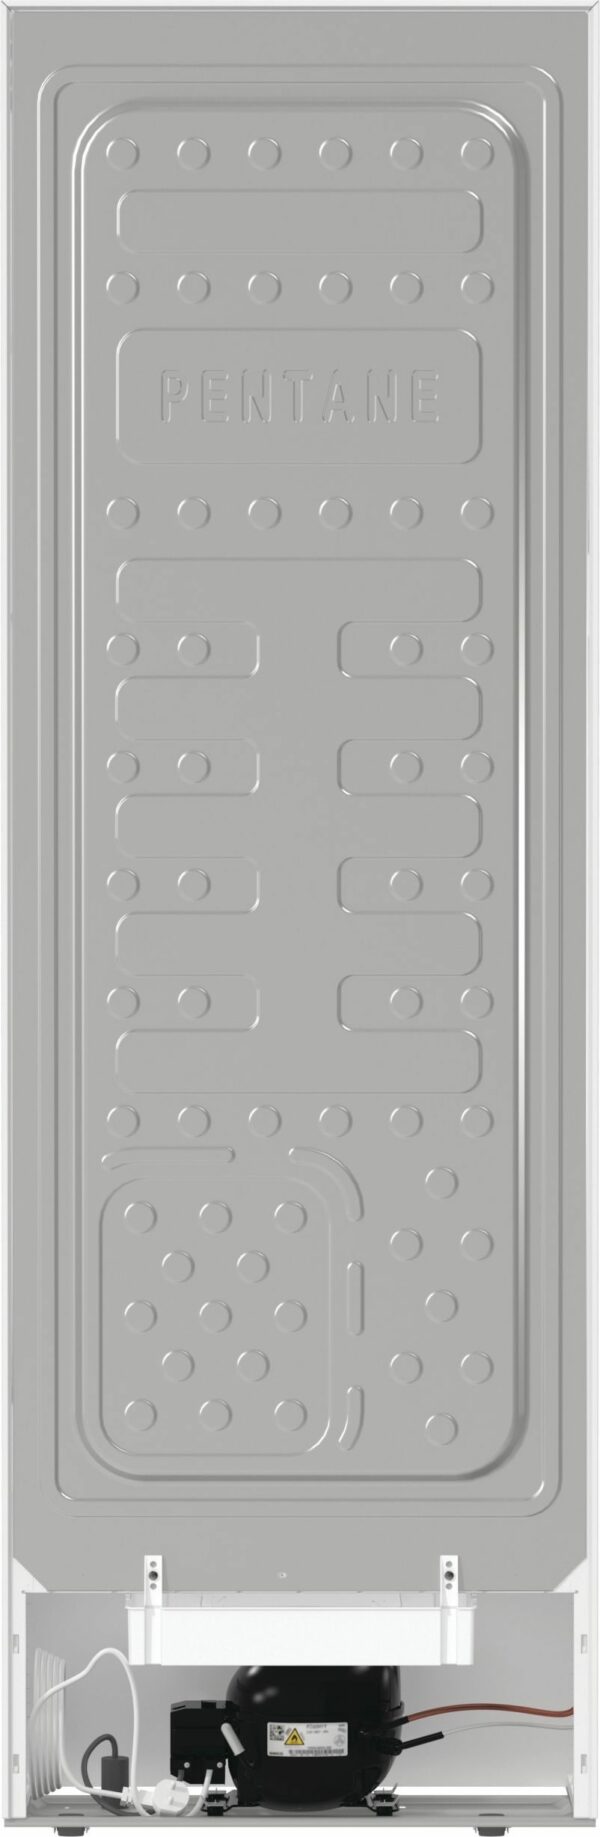 Samostojni hladilnik R619FEW5